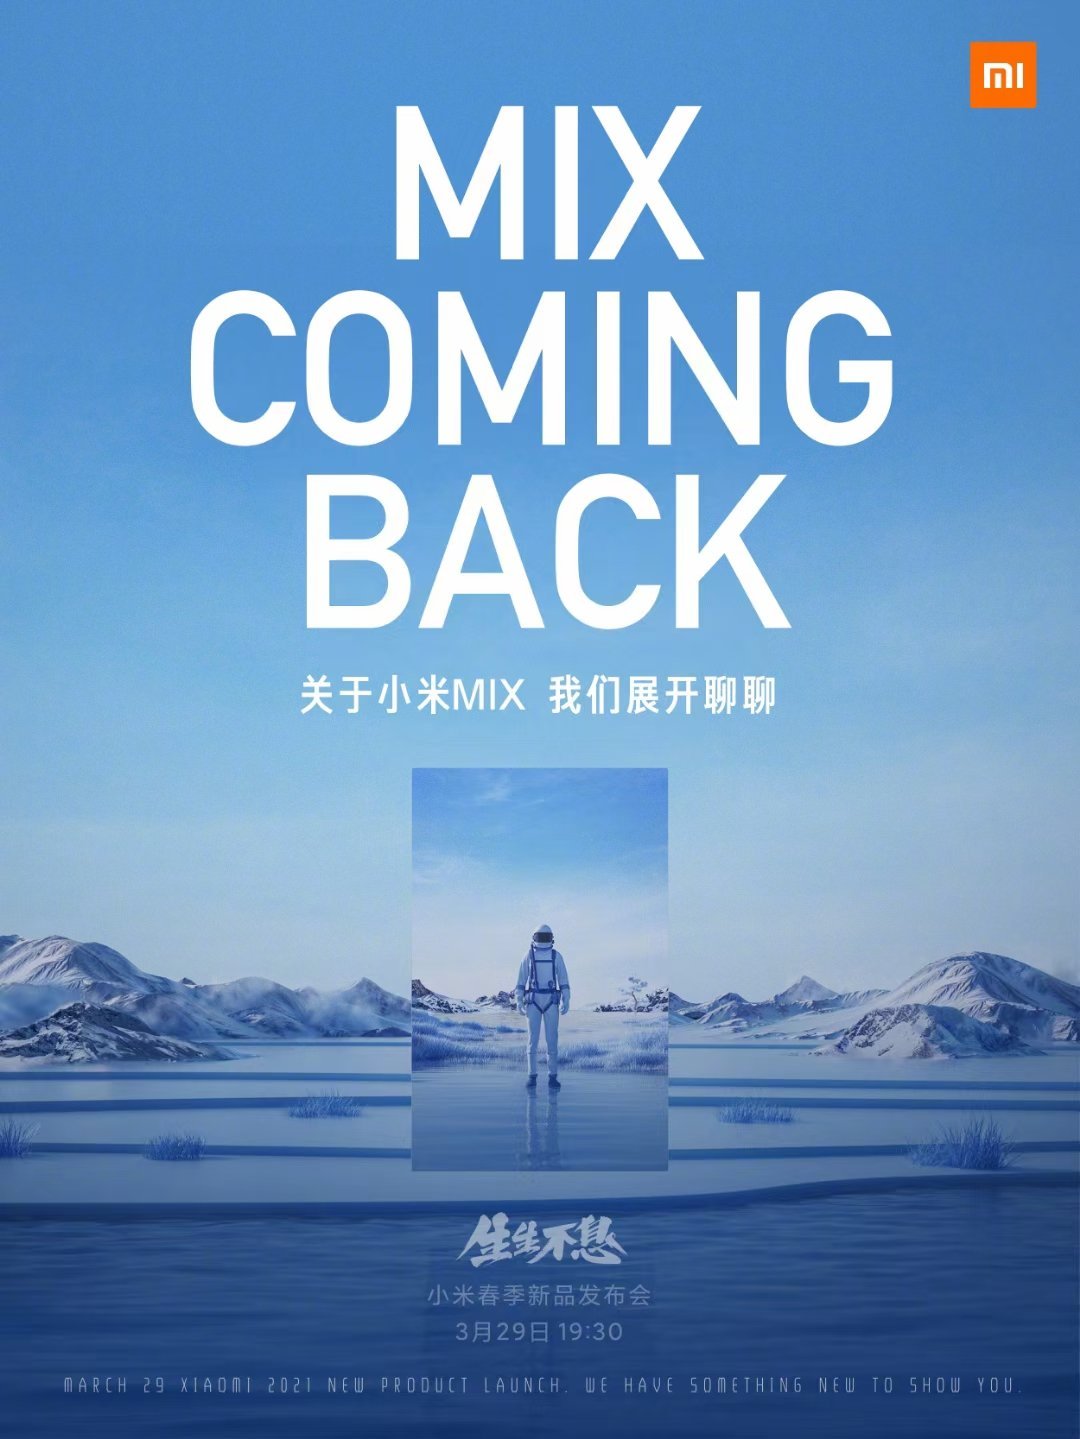 Il lancio dei telefoni della serie Xiaomi Mi MIX è confermato il 29 marzo